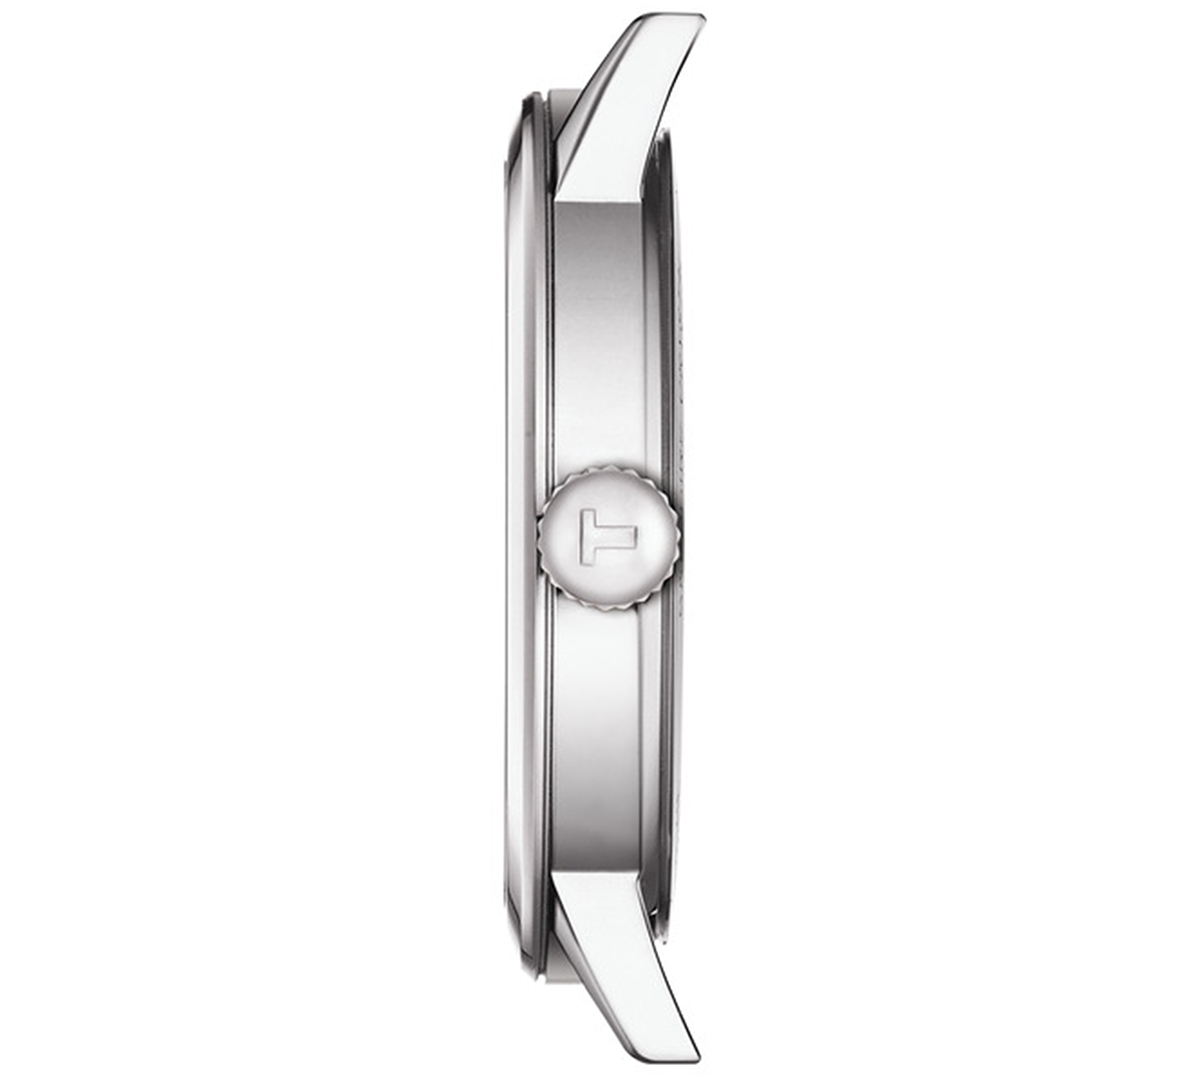 Shop Tissot Men's Swiss Classic Dream Stainless Steel Bracelet Watch 42mm In Black